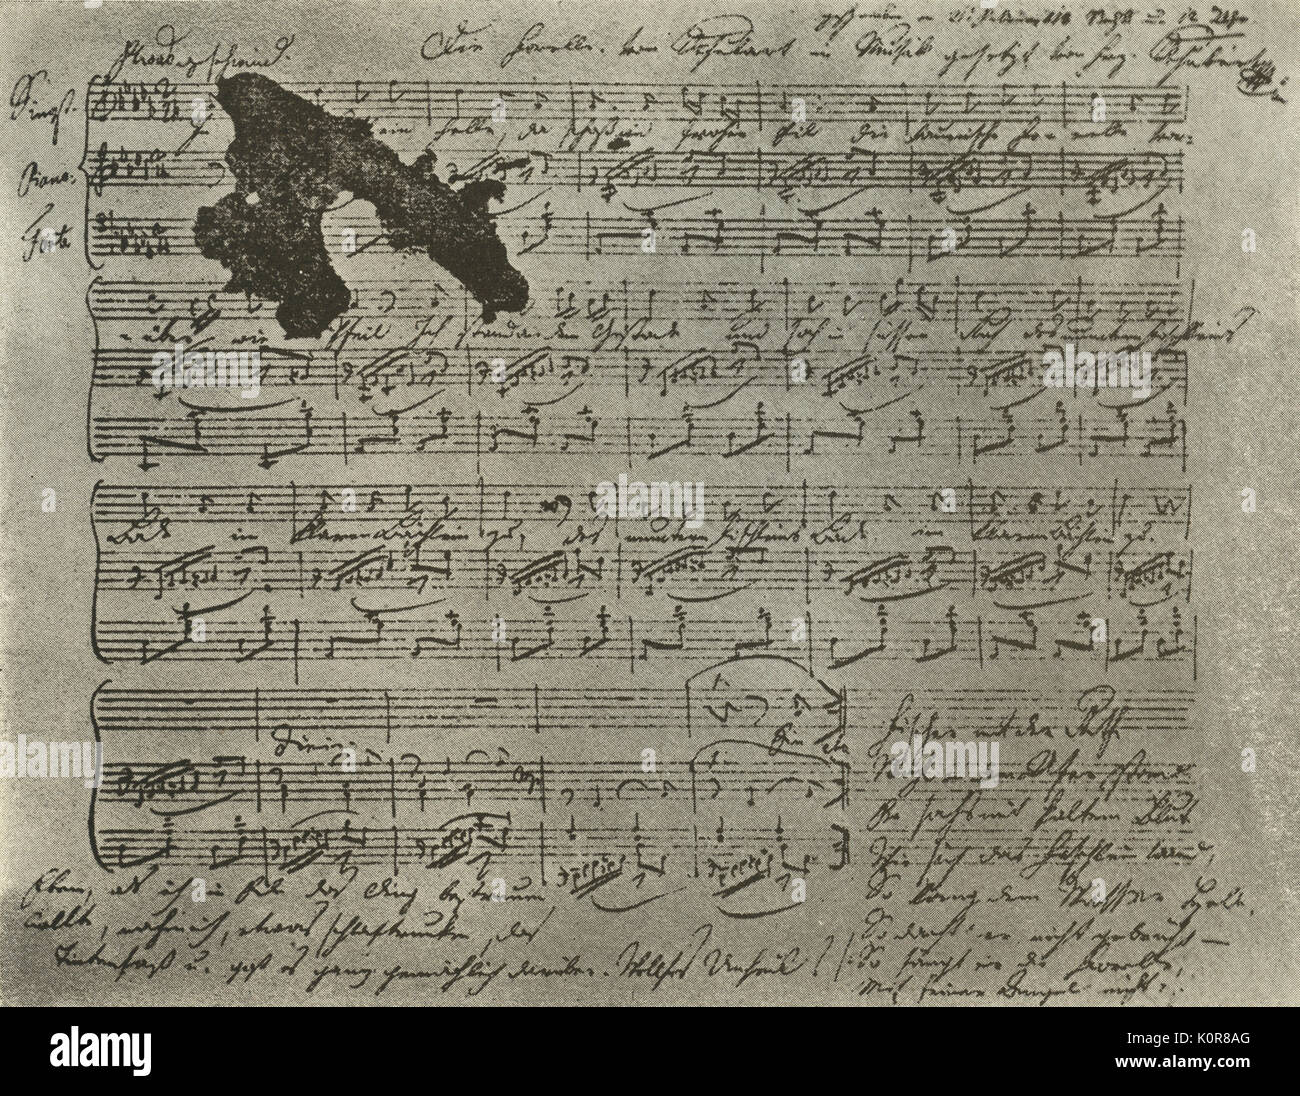 SCHUBERT, Franz - note manuscrite de ' Die Forelle (la truite), 1817. - Il est dit Schubert sprinkeled au lieu de sable d'encre sur le score fini. Compositeur autrichien ( 1797 - 1828 ) Banque D'Images